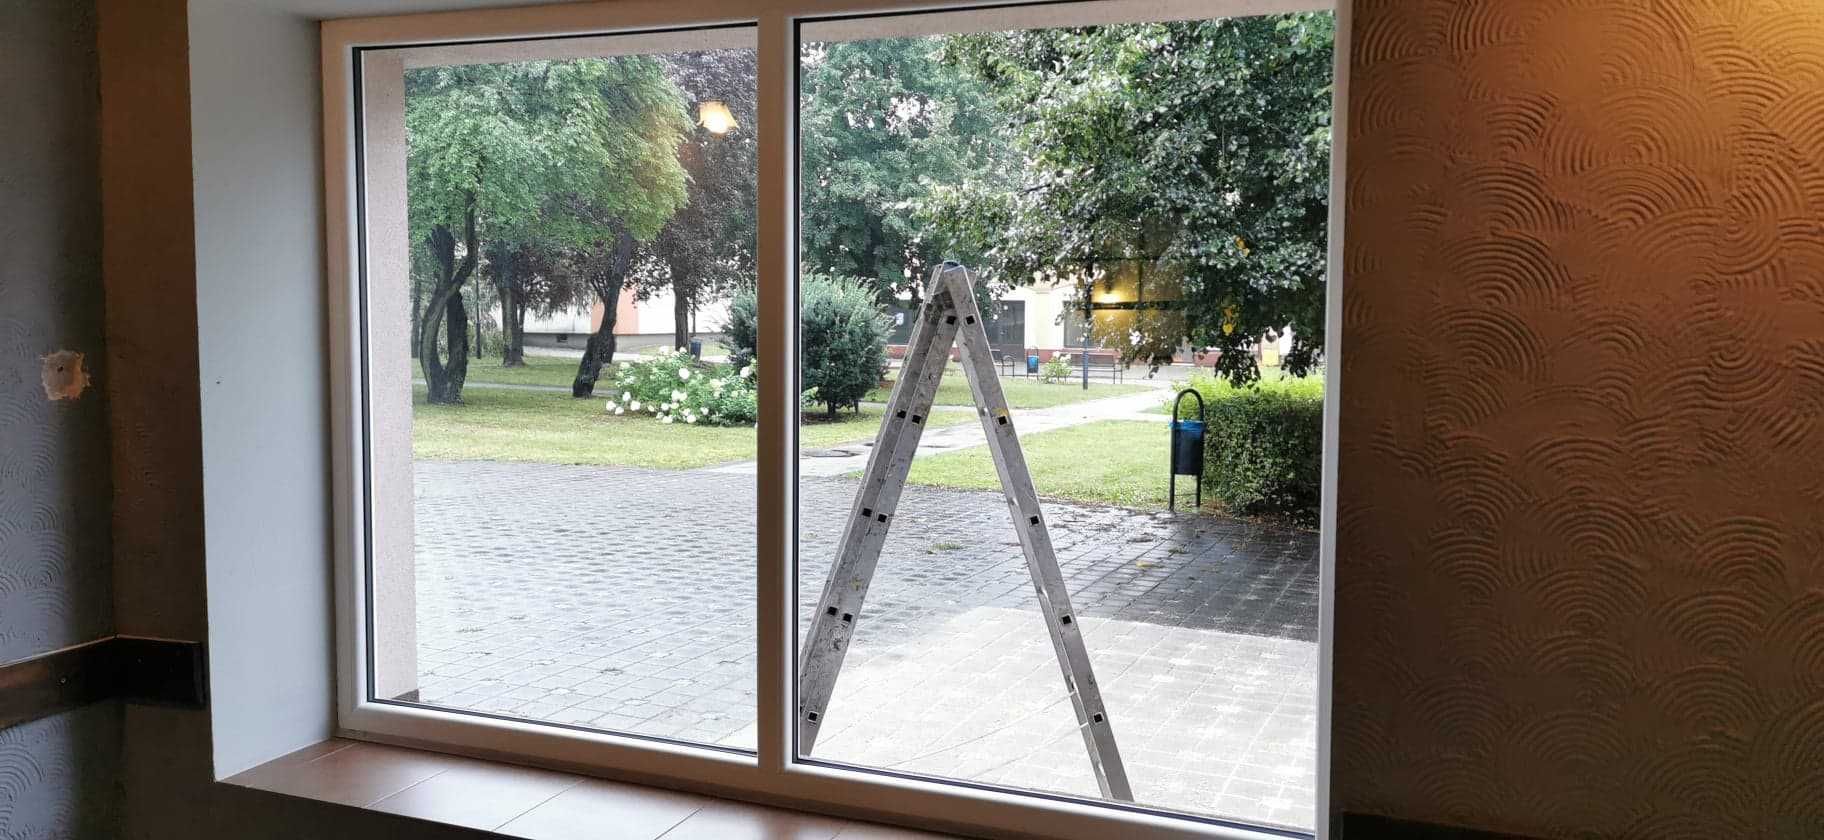 Mycie Okien Elewacji Szklanych Sprzątanie Biur Mieszkań Domów Mycie PV